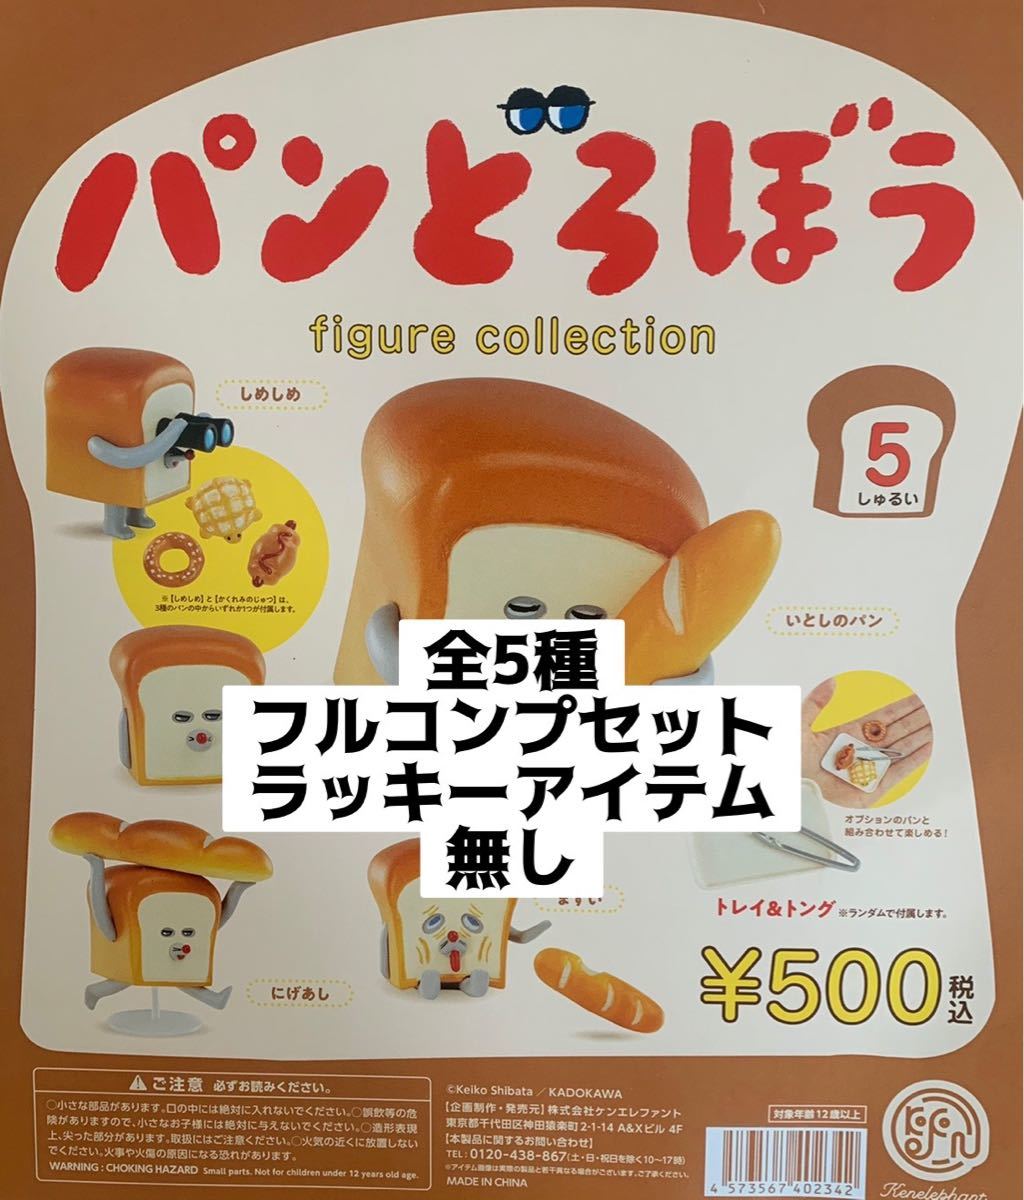 パンどろぼう figure collection 5しゅるい 6個パック 【再販予約